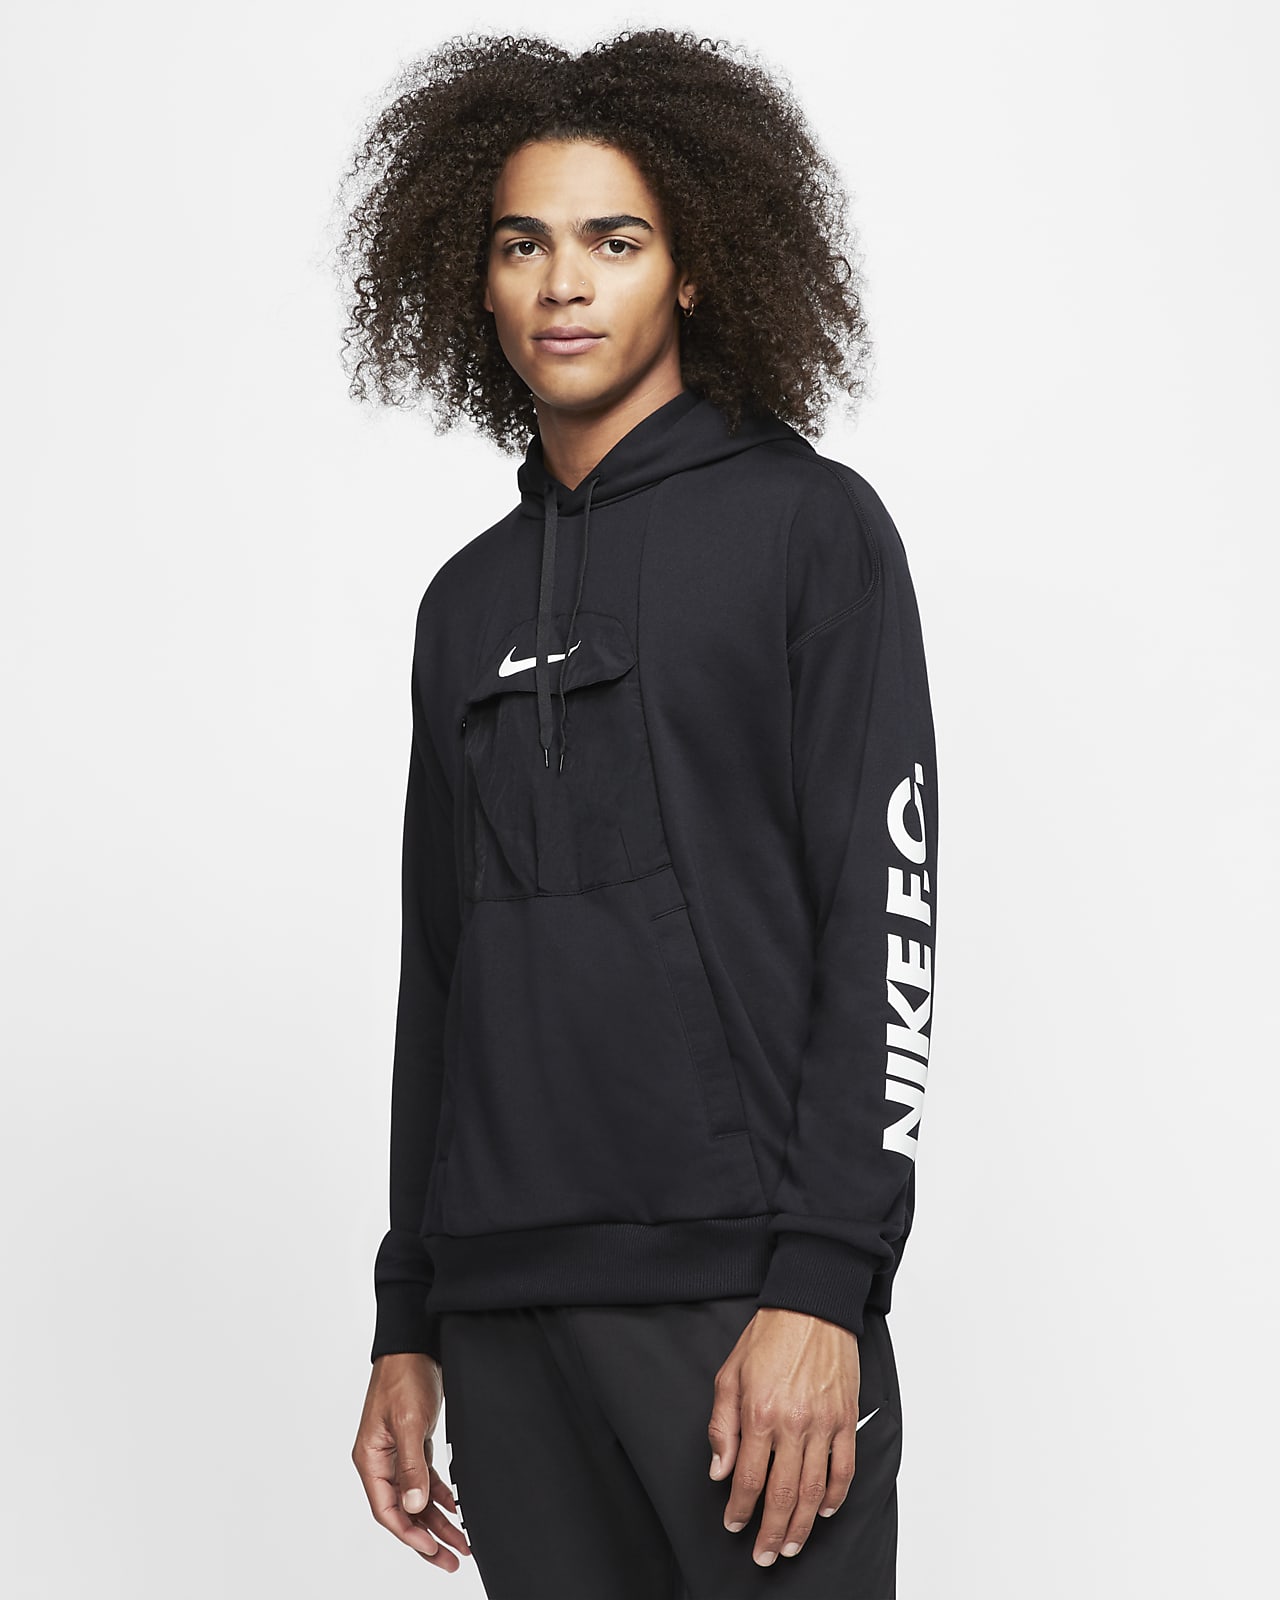 Nike F.C. Men's Pullover Football Hoodie